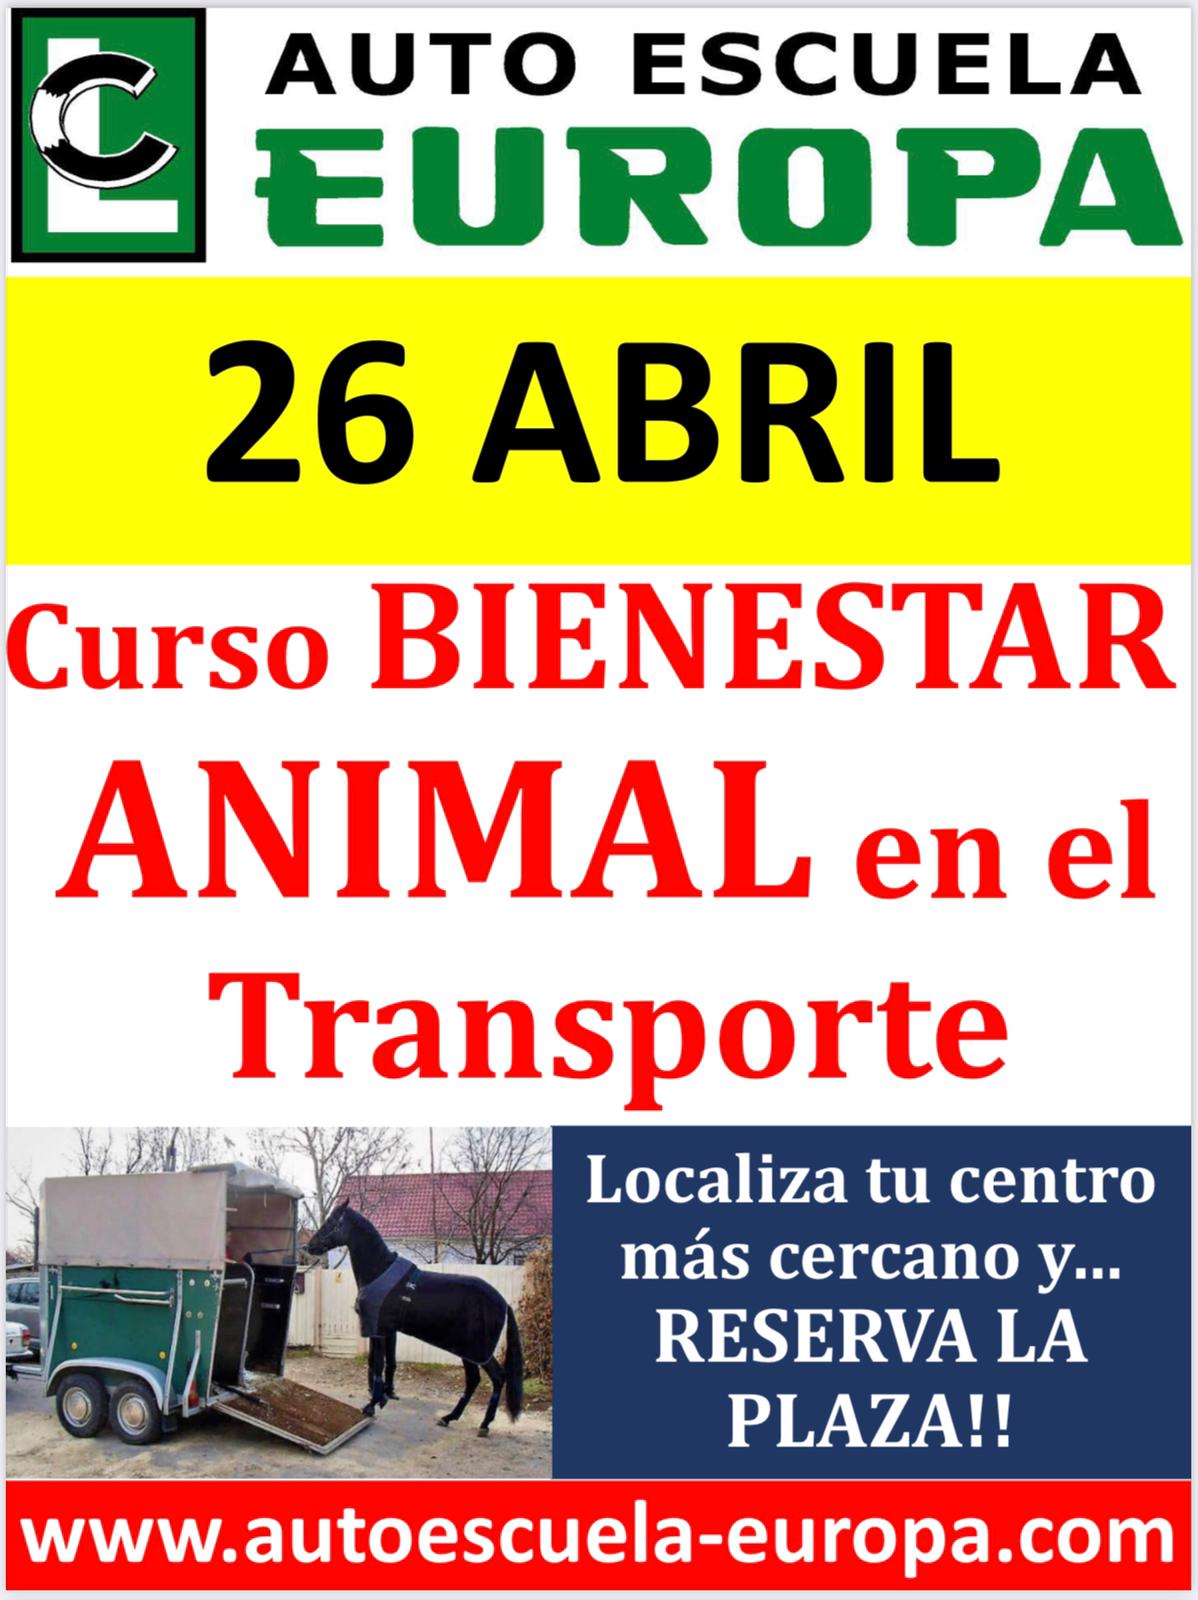 CURSO DE BIENESTAR ANIMAL EN EL TRANSPORTE